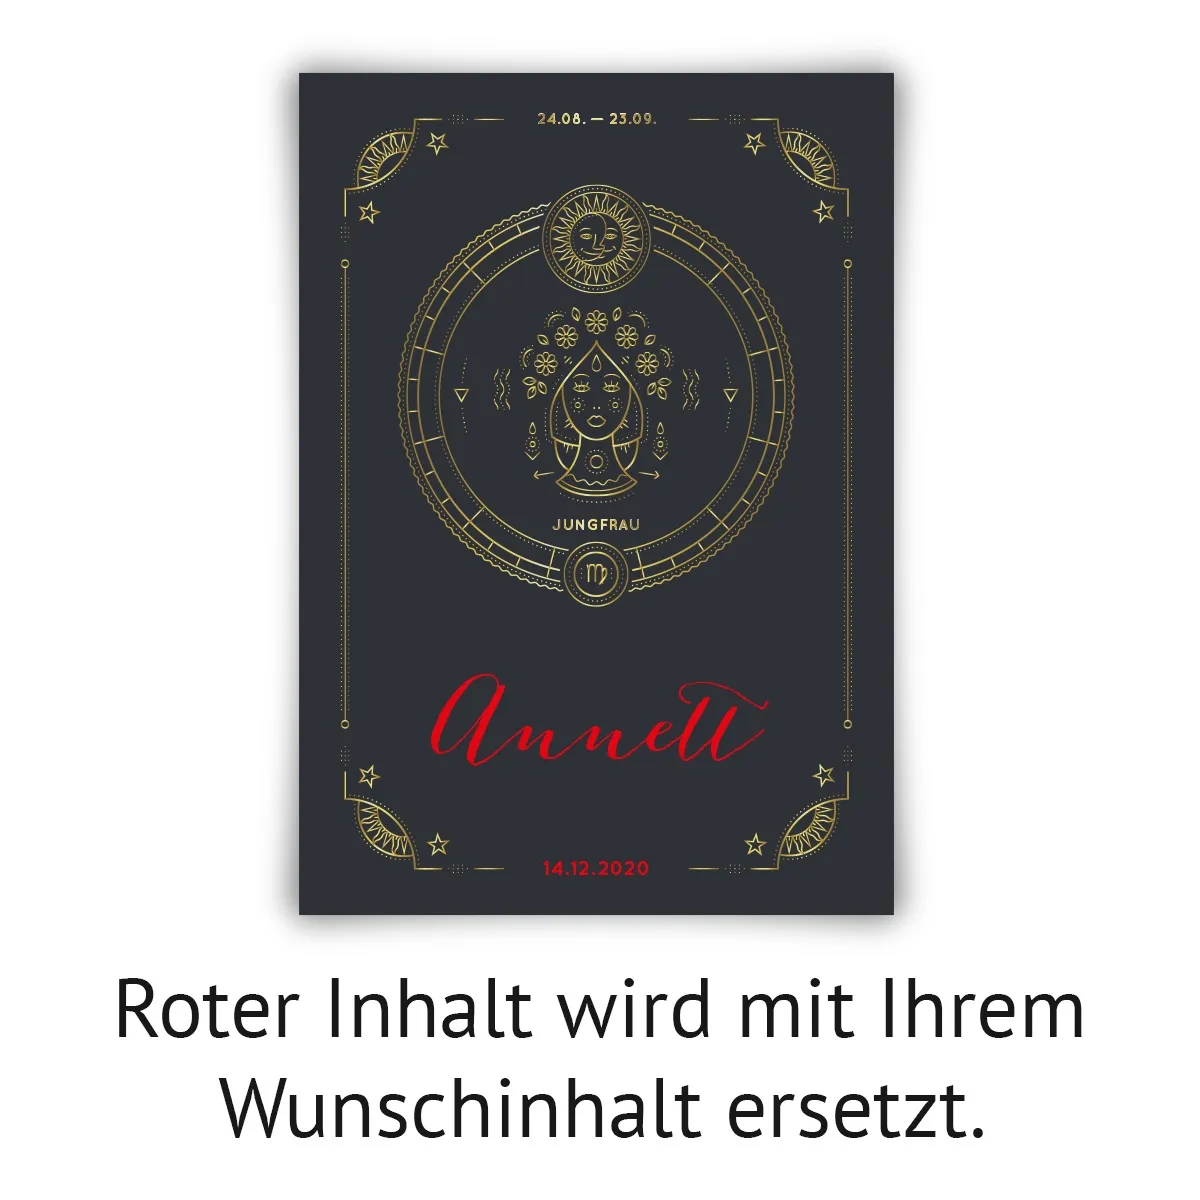 Personalisiertes Kunstdruck Poster mit Heißfolienprägung - Sternzeichen Jungfrau